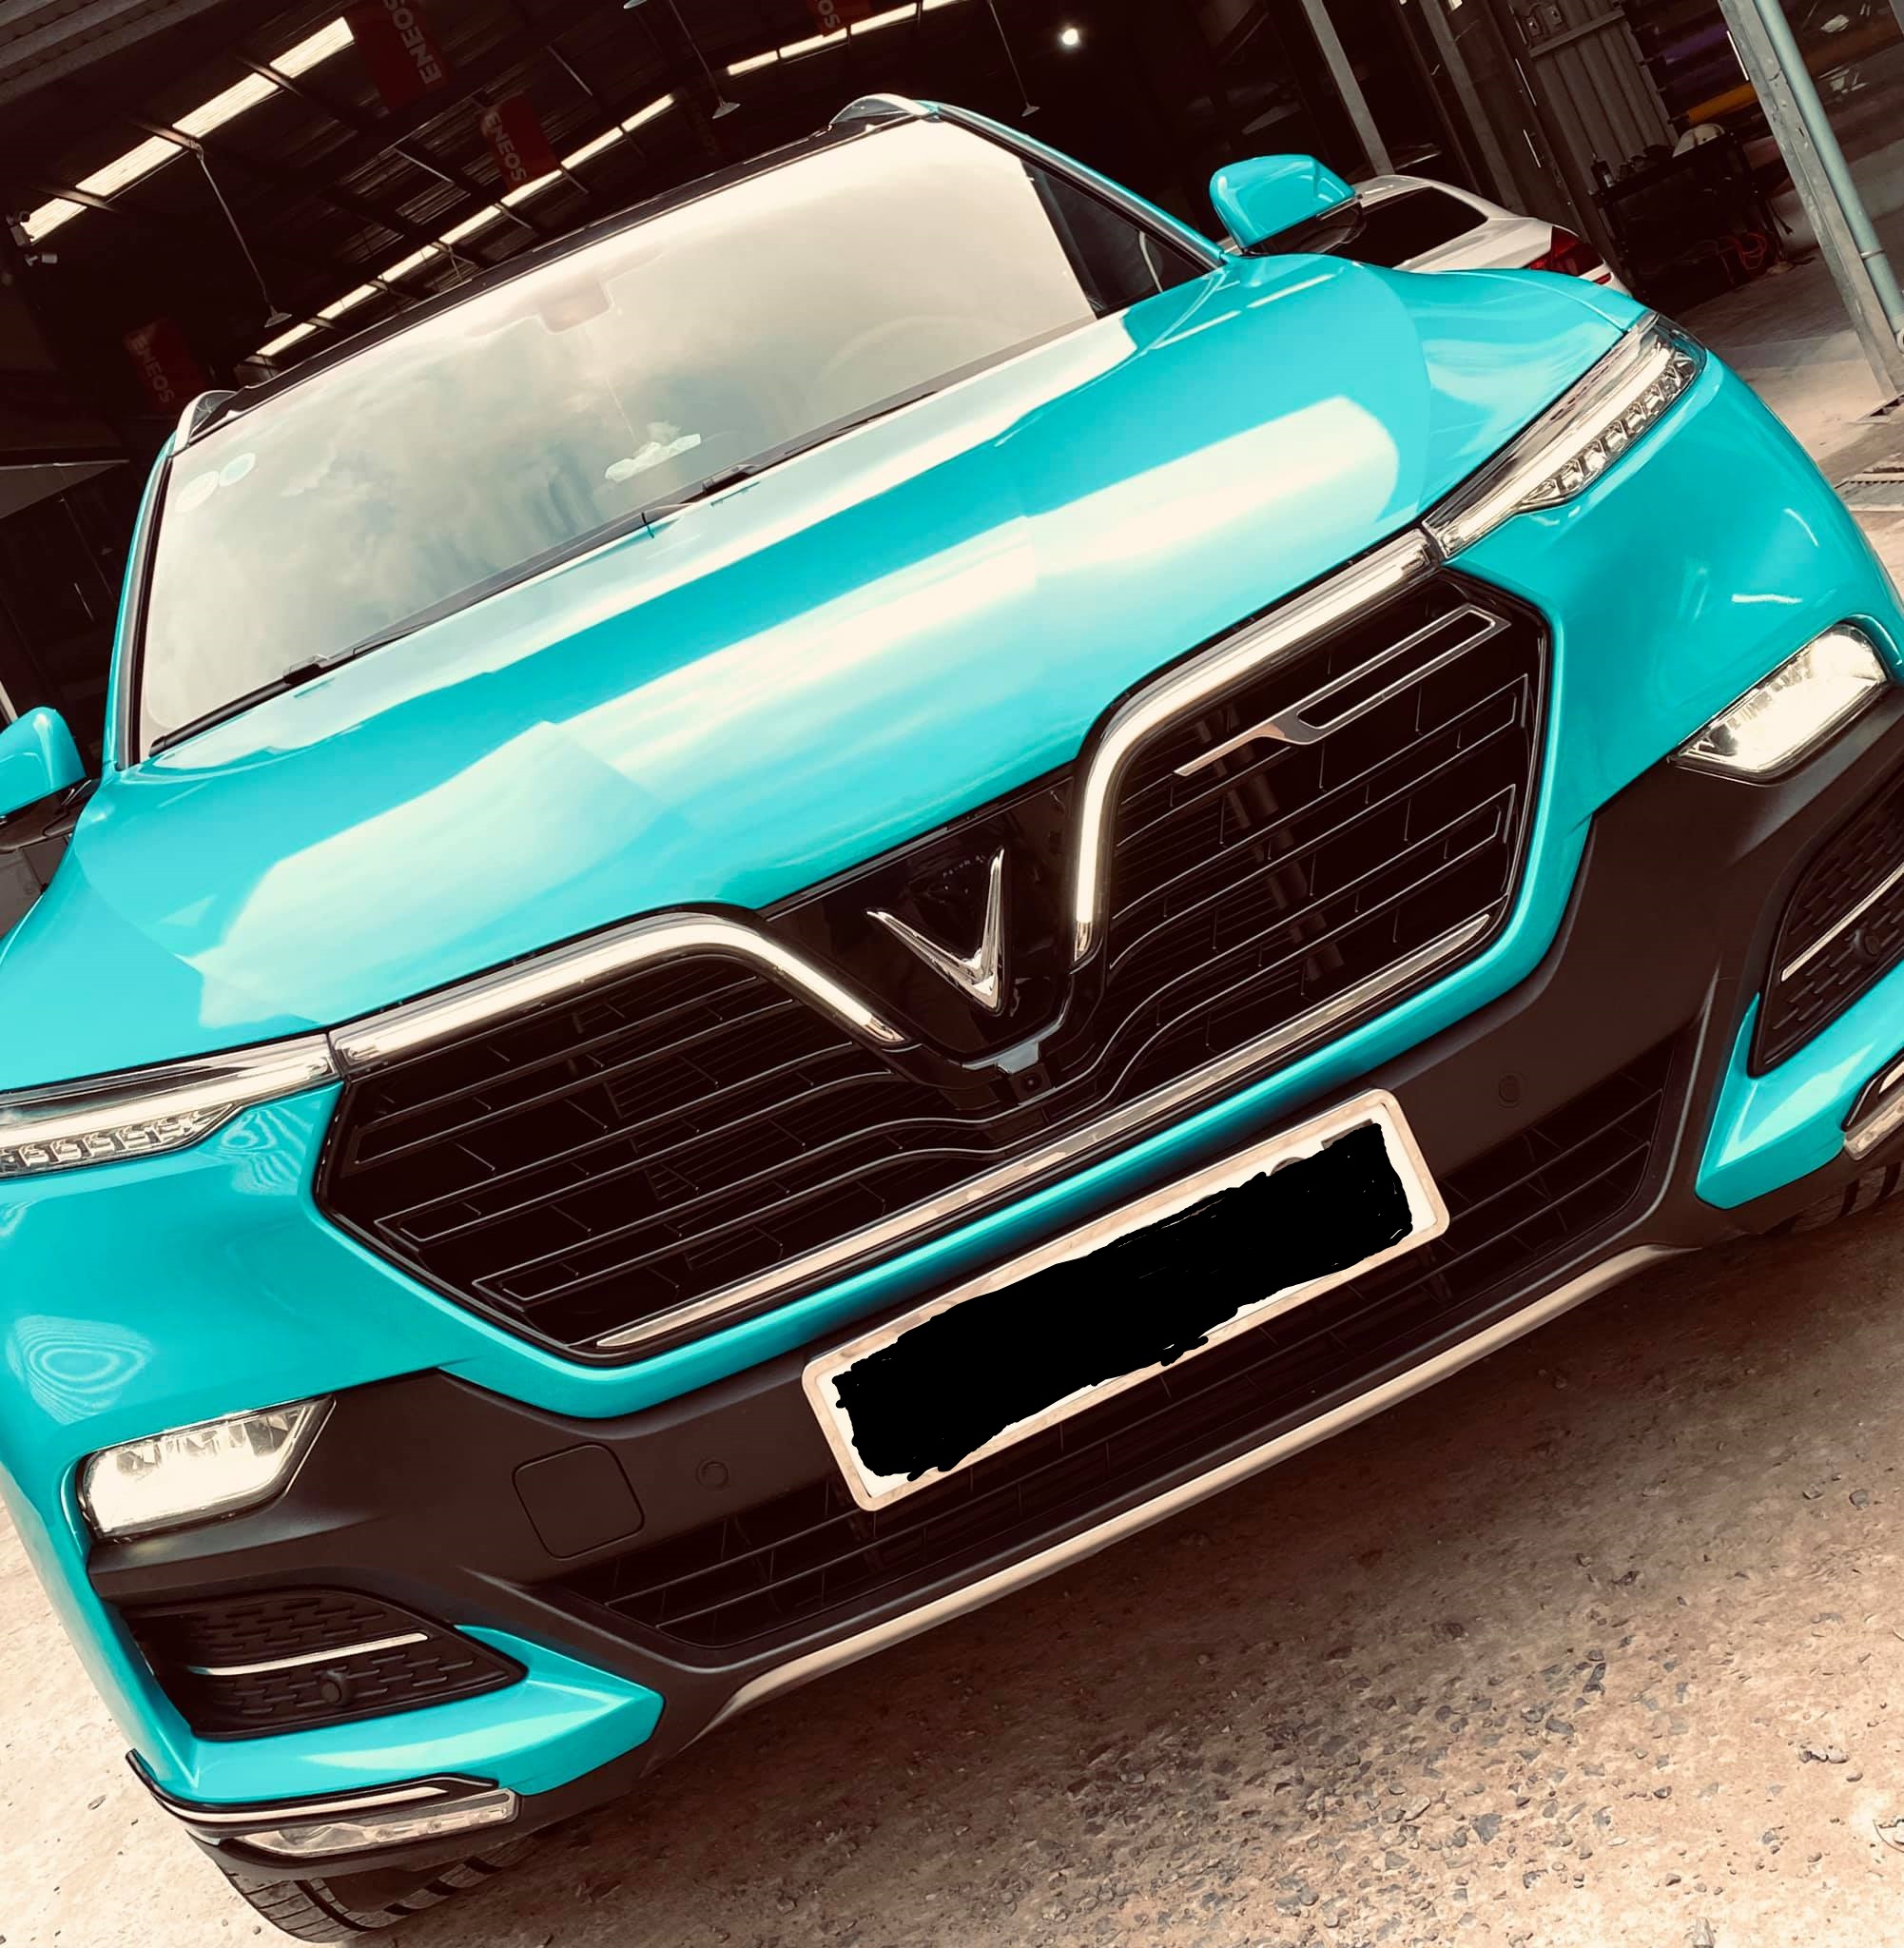 Bắt trend đổi màu xe, VinFast LUX SA2.0 thay bộ cánh màu xanh cực chất tại Sài Gòn